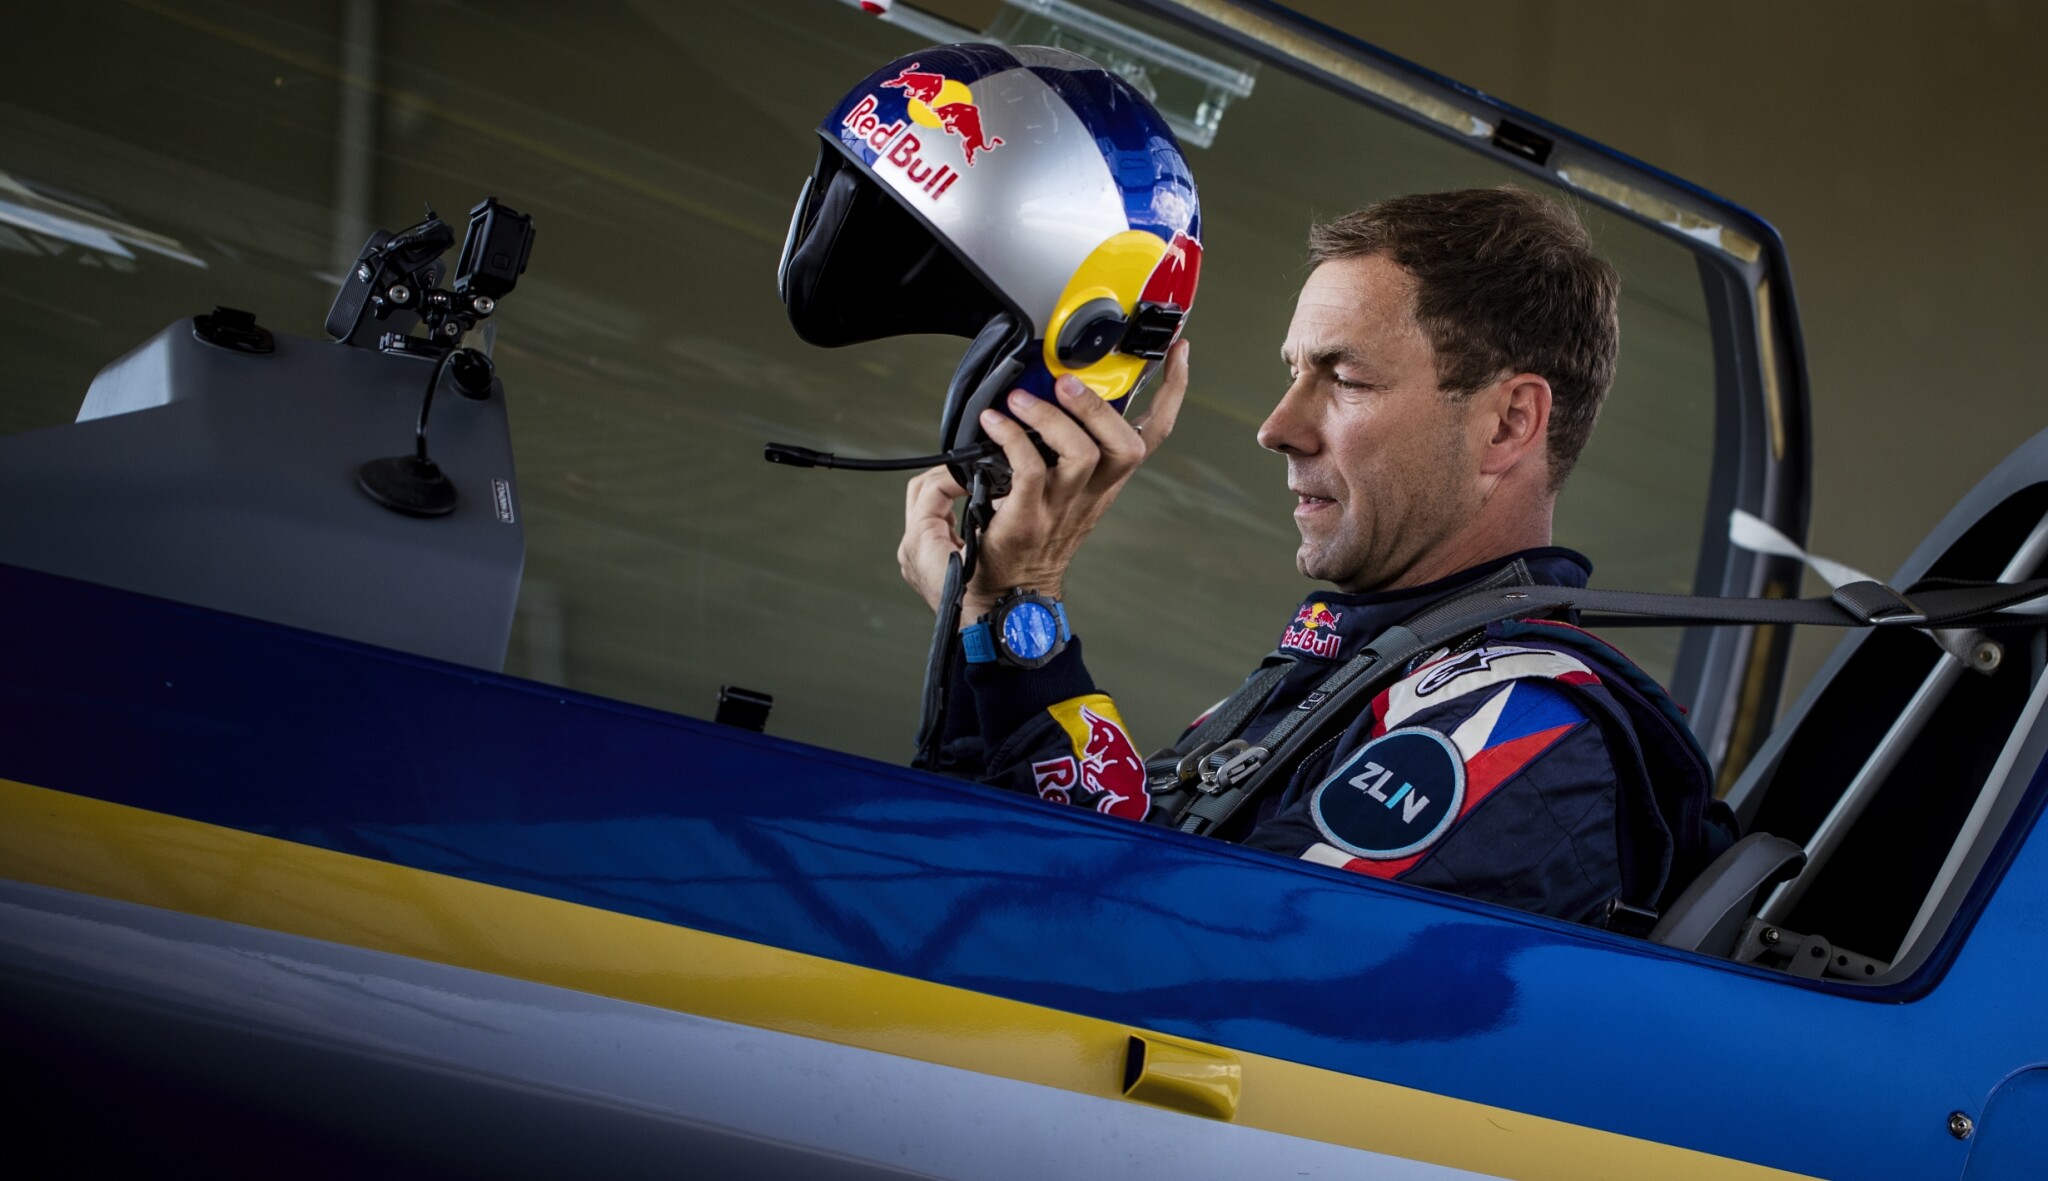 Závodem jsem žil, teď nezbývá než čekat, říká po konci Red Bull Air Race šampion Šonka